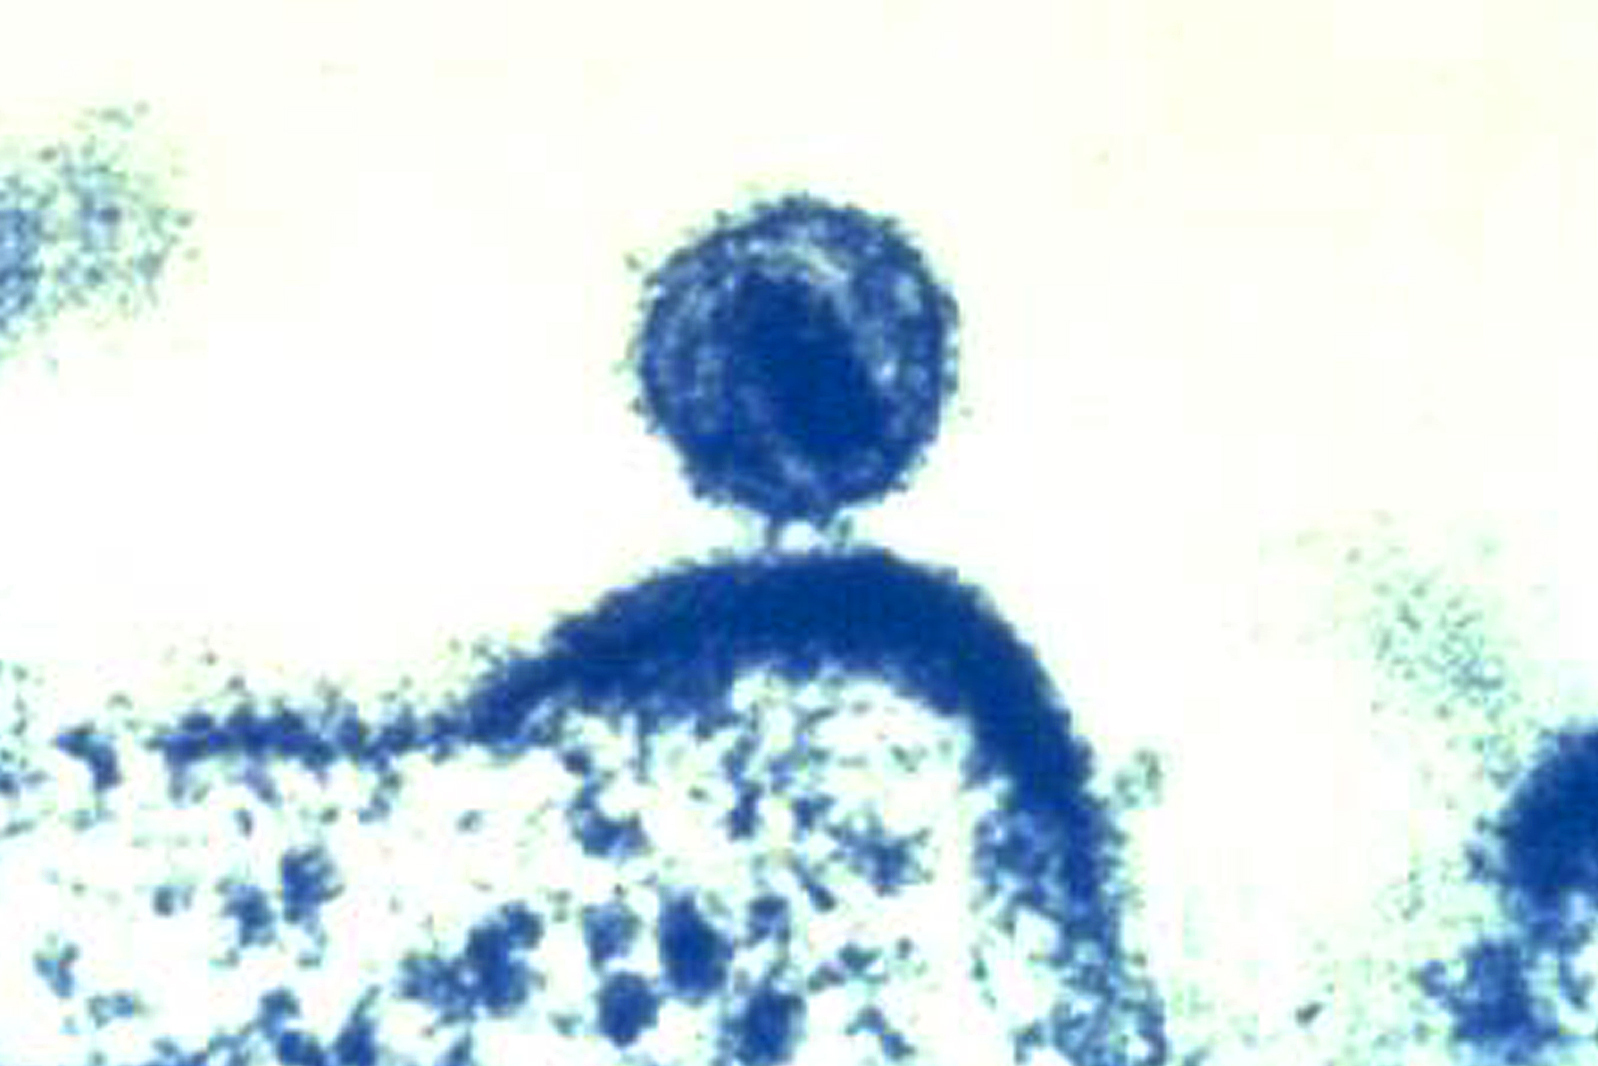 Imagen coloreada de un virus VIH facilitada por el Instituto Nacional de Alergias y Enfermedades Infecciosas